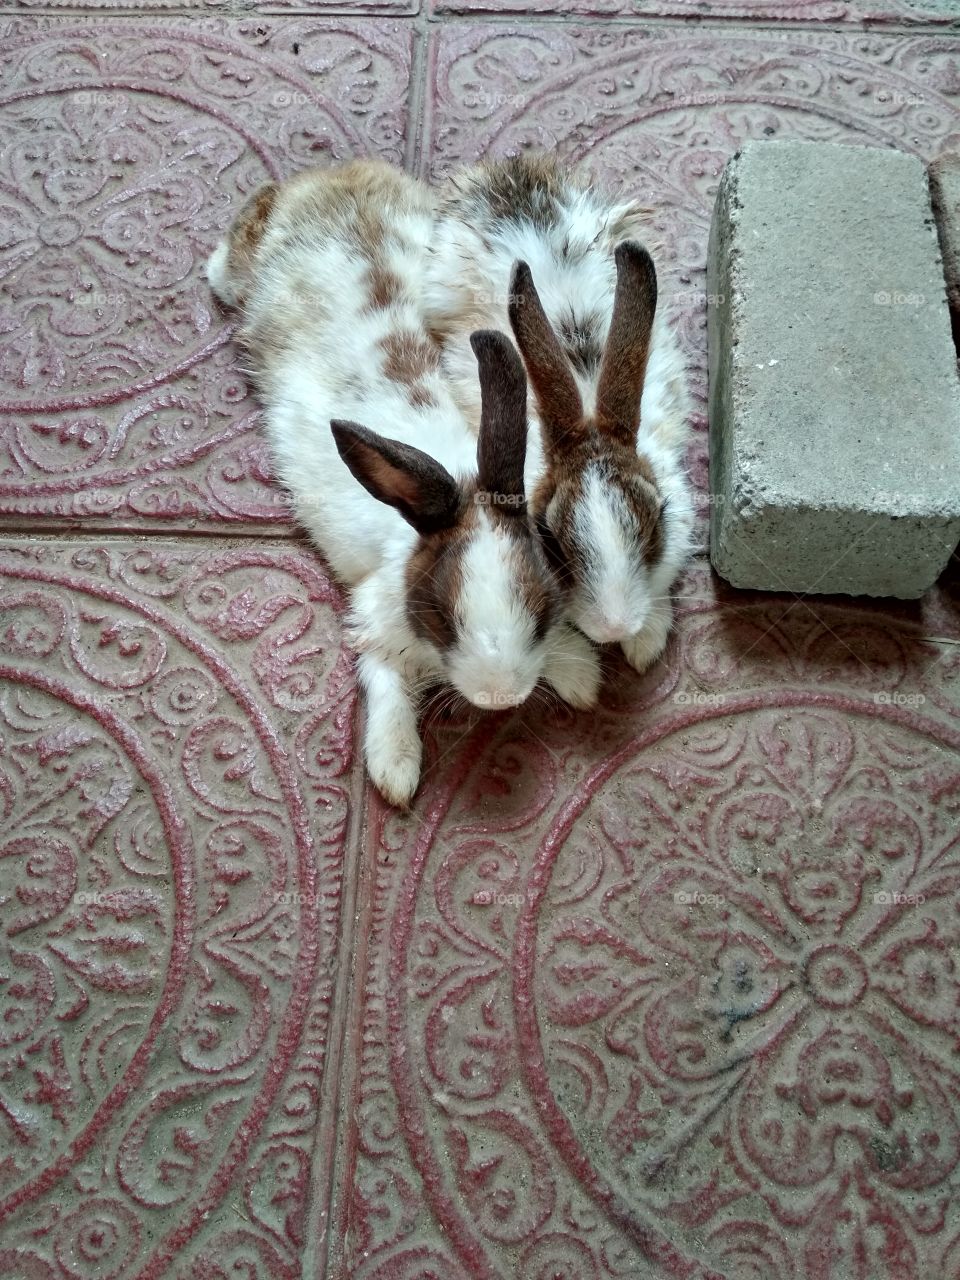 pet rabbits